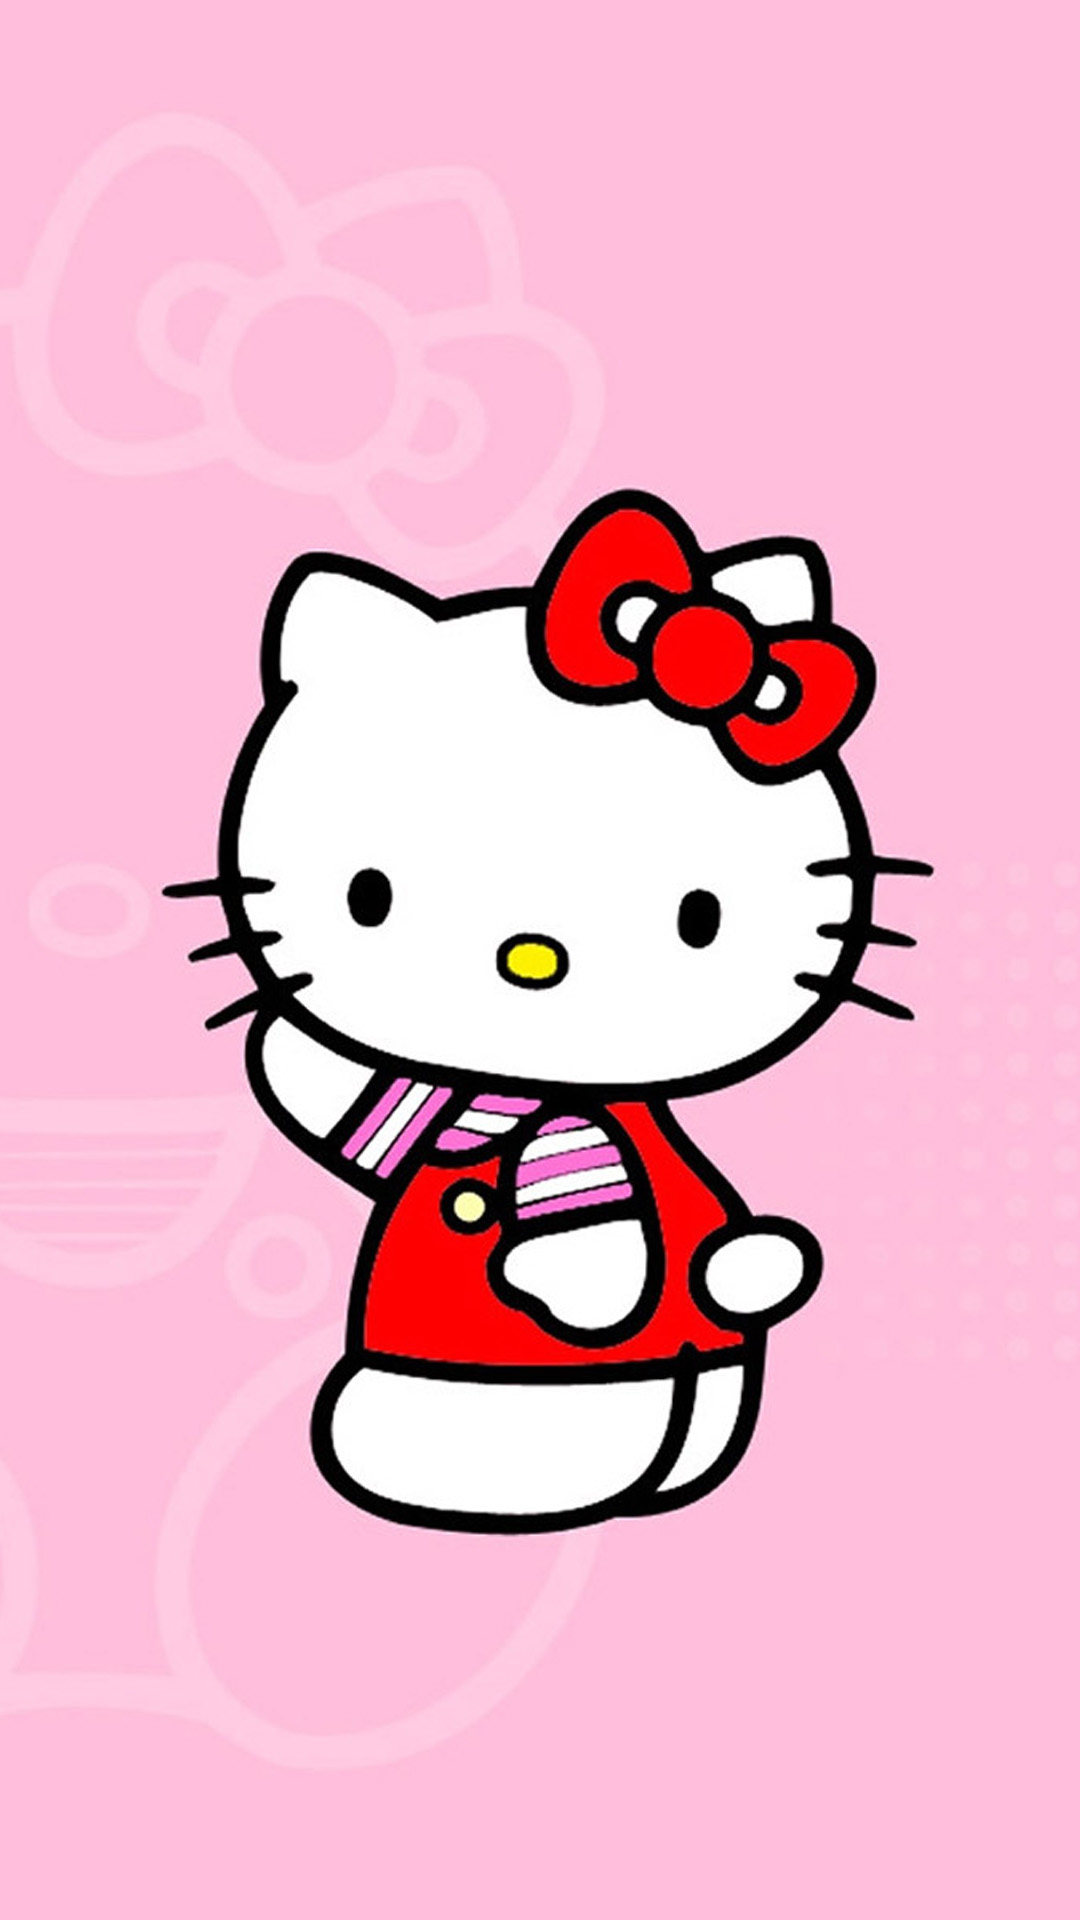 Bạn là tín đồ của cô mèo Hello Kitty đáng yêu và muốn thể hiện sự cuồng nhiệt của mình cùng chiếc iPhone yêu quý? Hãy tận dụng ngay cơ hội để trang trí điện thoại của bạn với các hình nền Hello Kitty cho iPhone - những hình ảnh đáng yêu, tươi sáng và đầy sức hút. Hãy giữ mãi tình yêu với cô mèo may mắn và những hình ảnh tuyệt vời này.